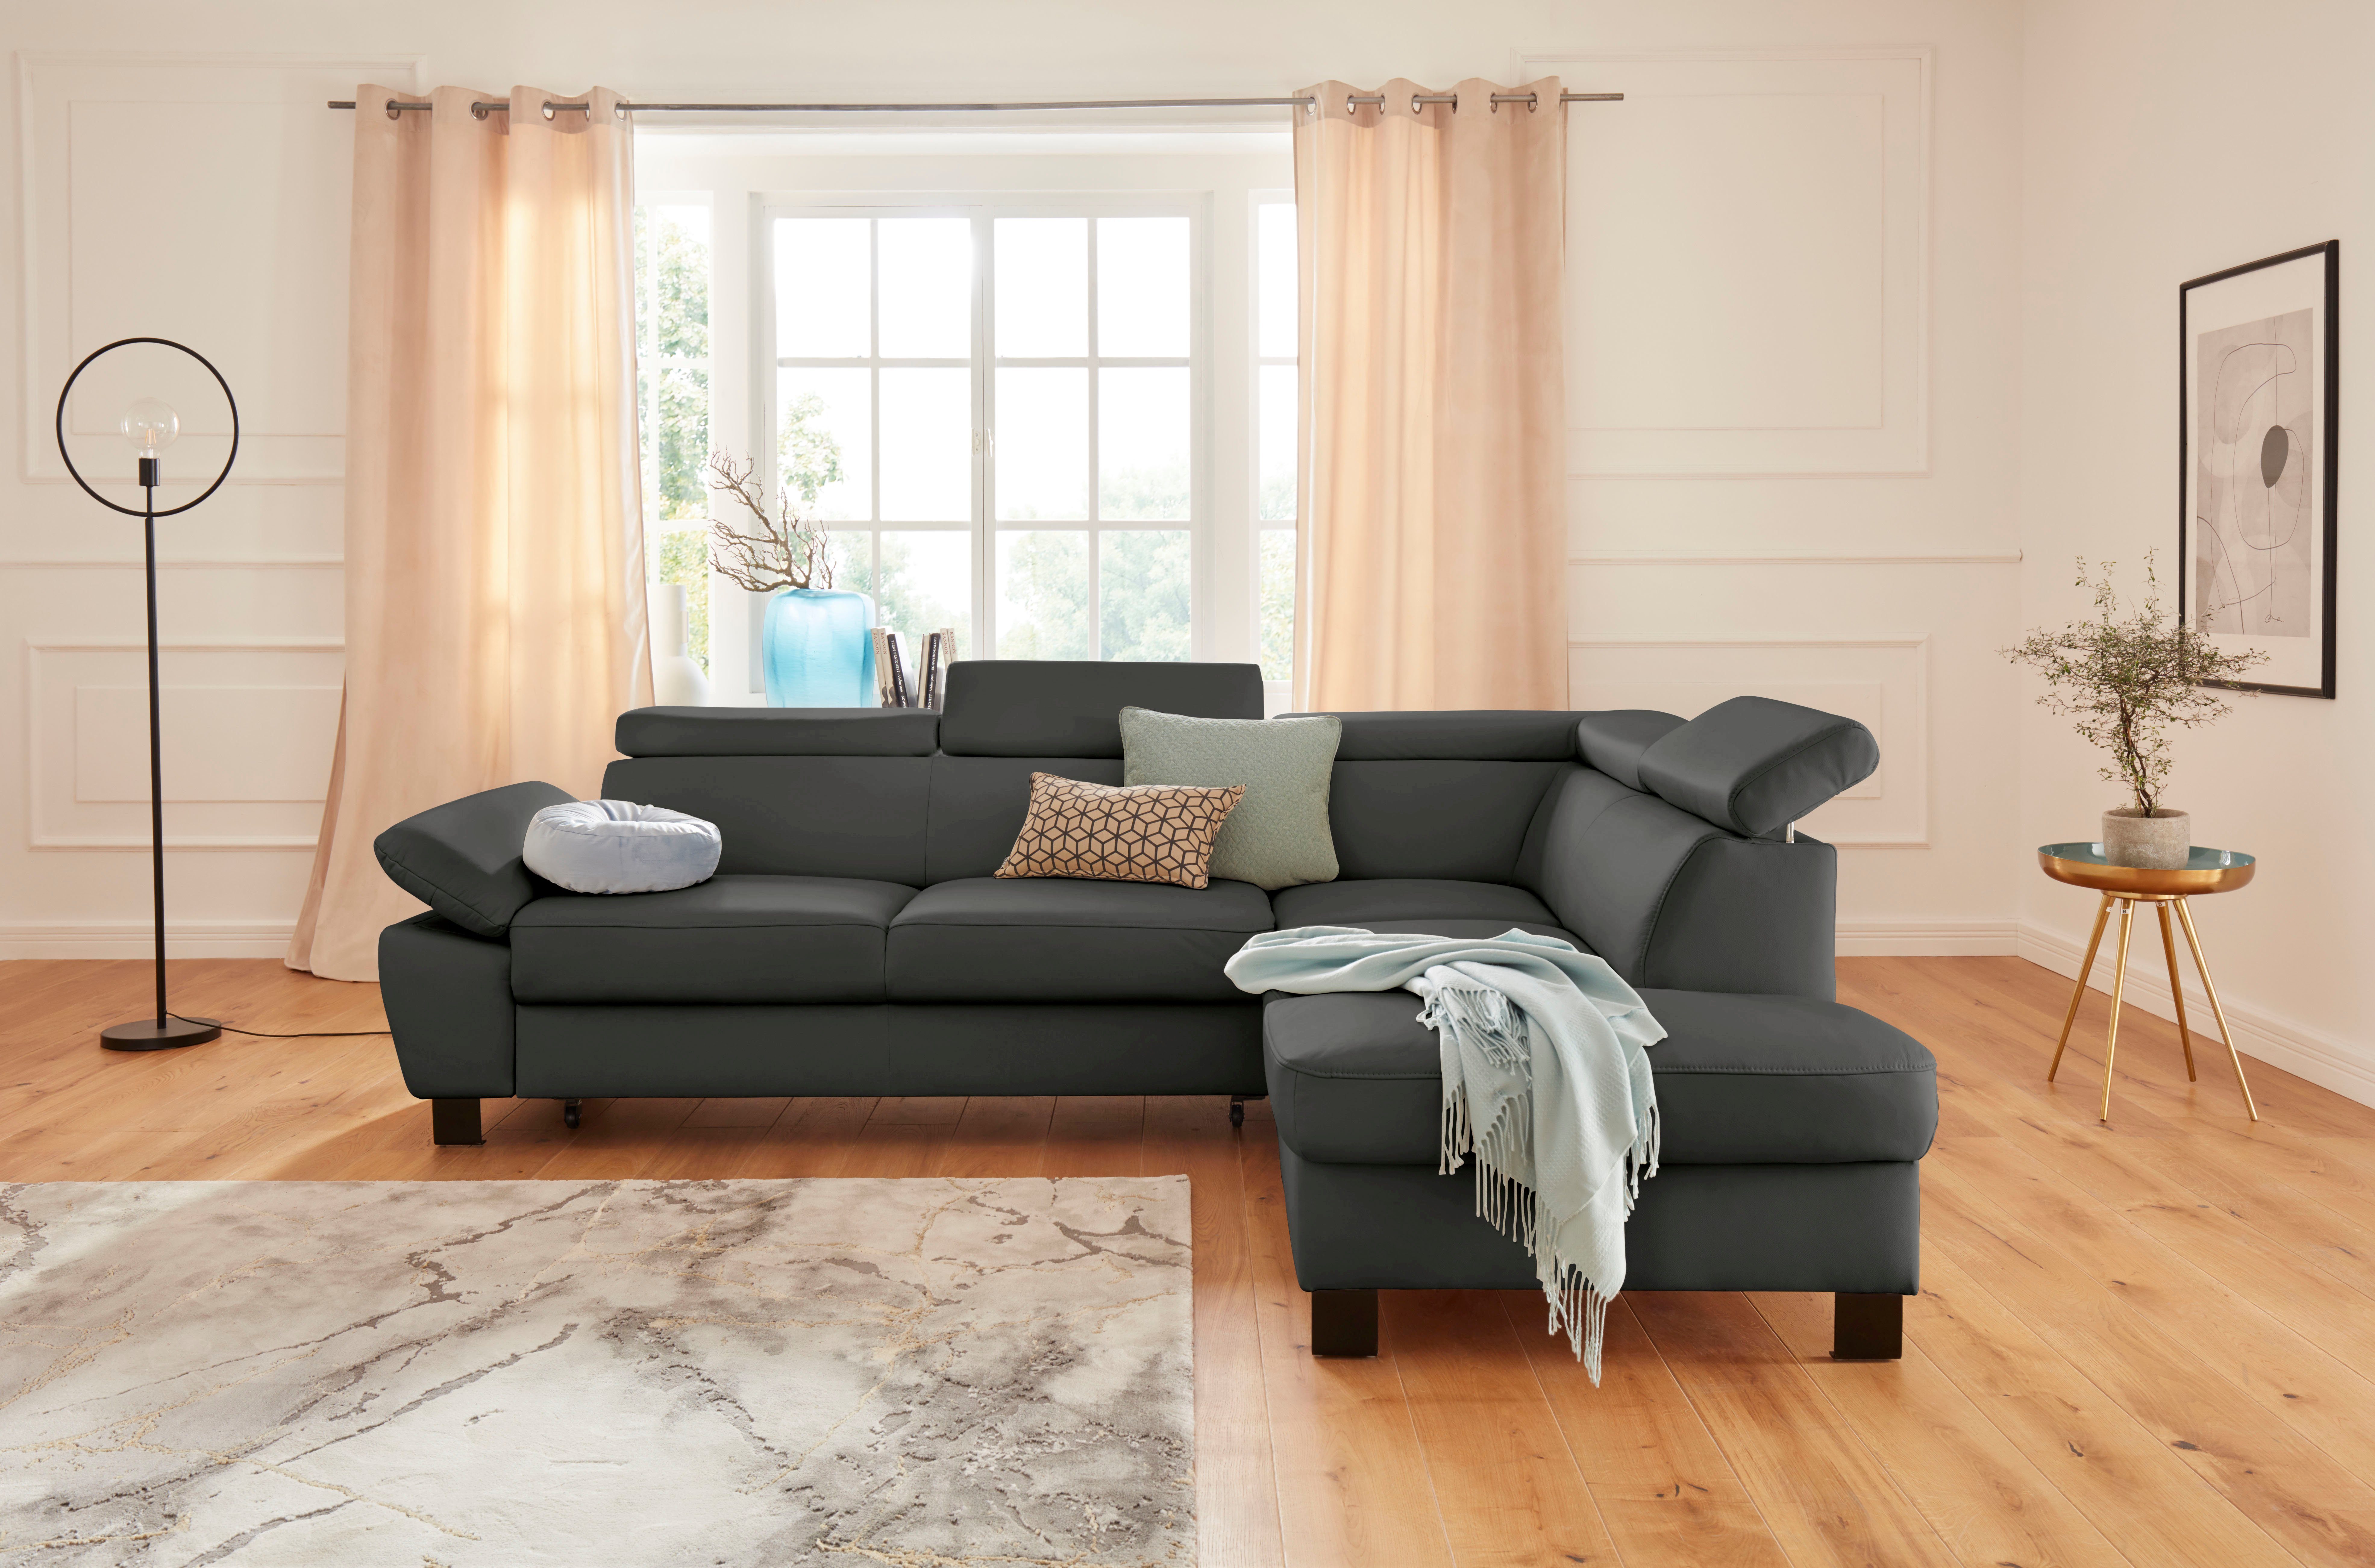 exxpo - sofa fashion Hoekbank met verstelbare hoofdsteun en verstelbare armleuningen, naar keuze met slaapfunctie en bedkist